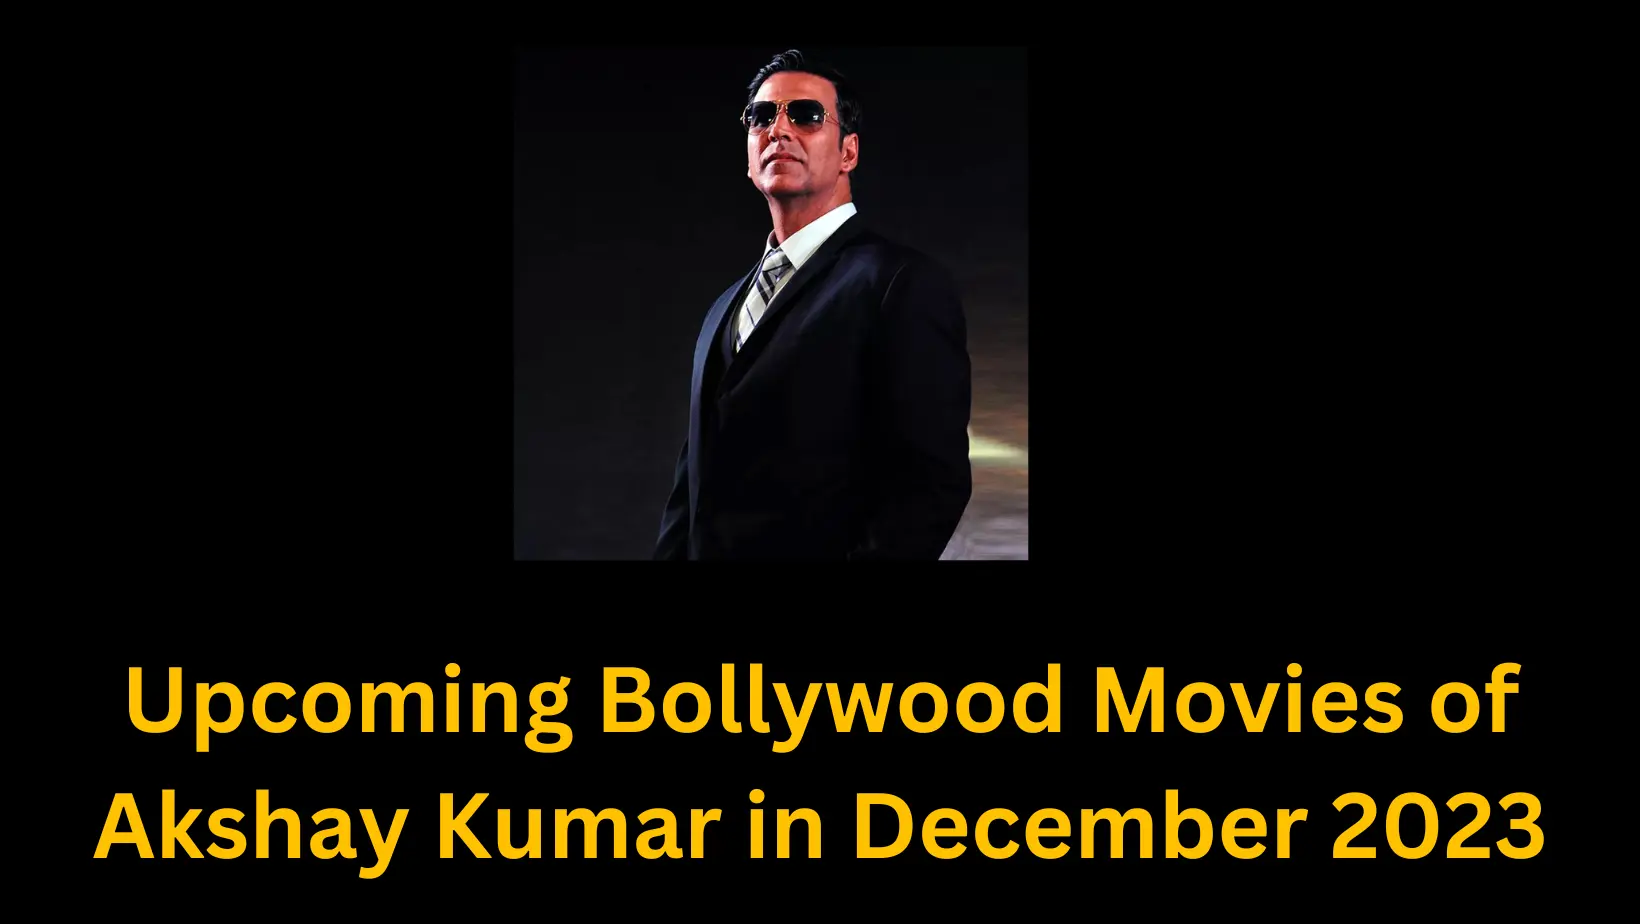 Akshay Kumar in December